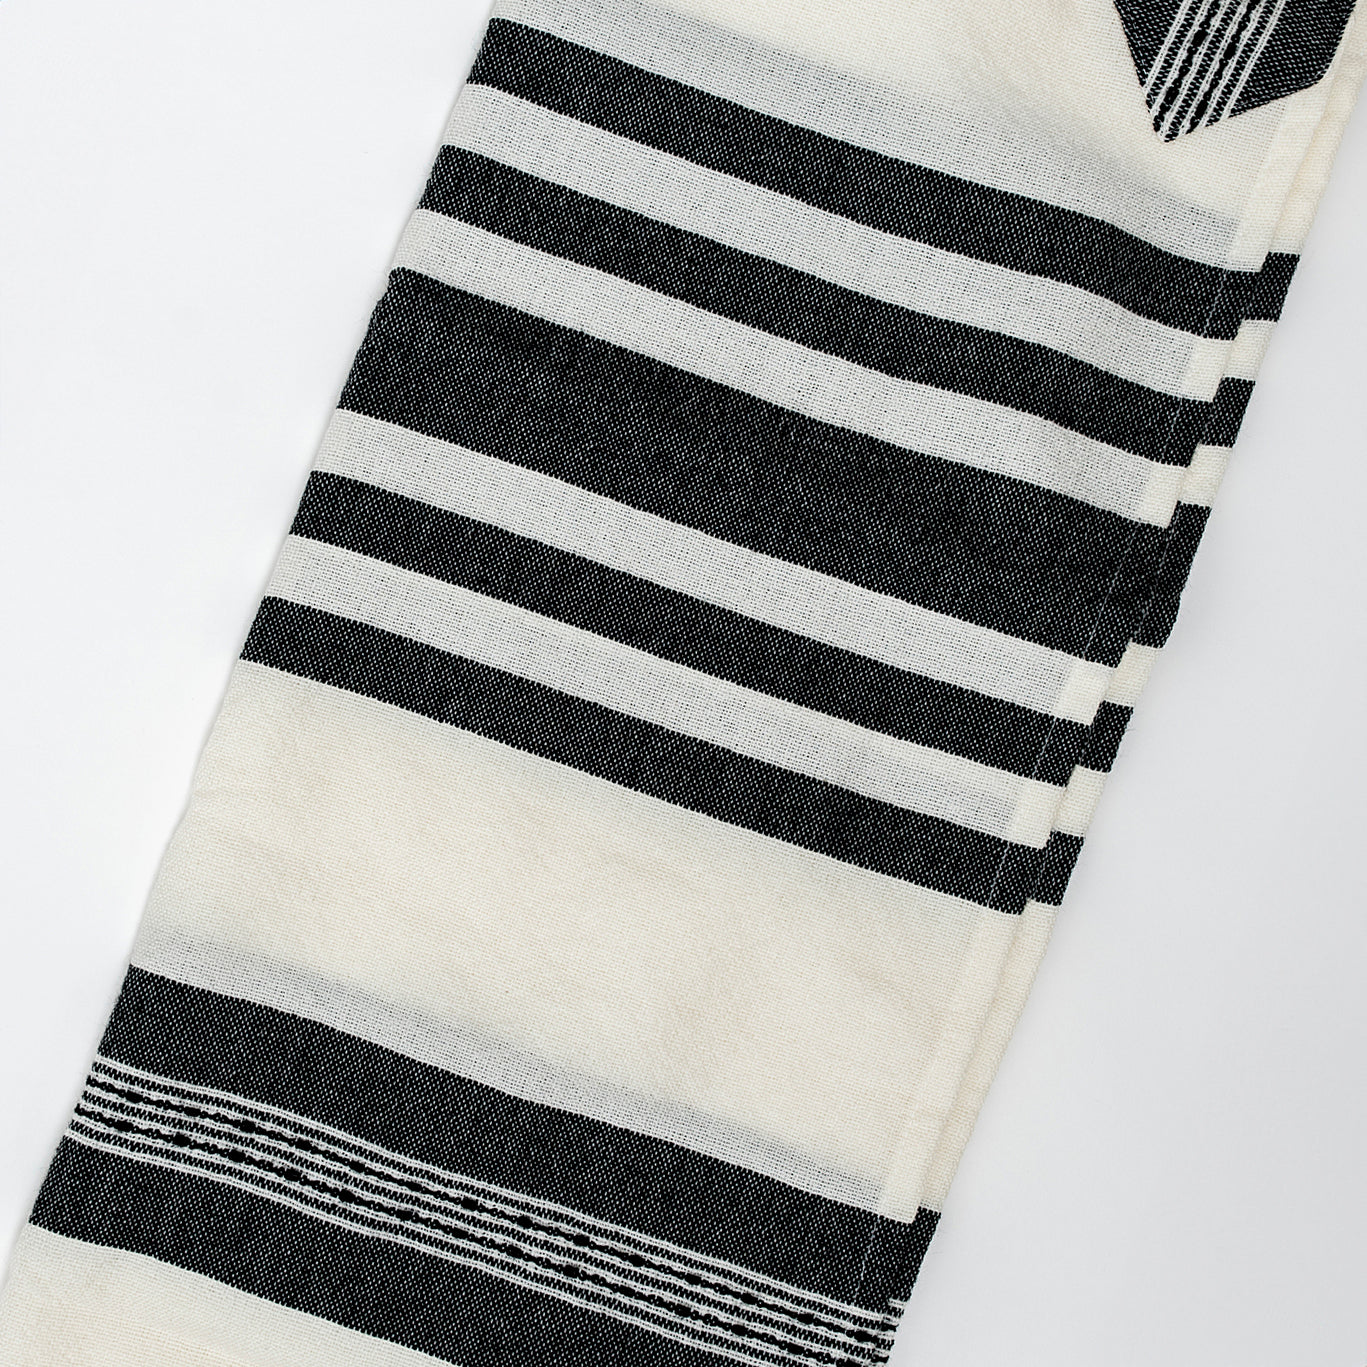 David - Wool Tallit - Black on White